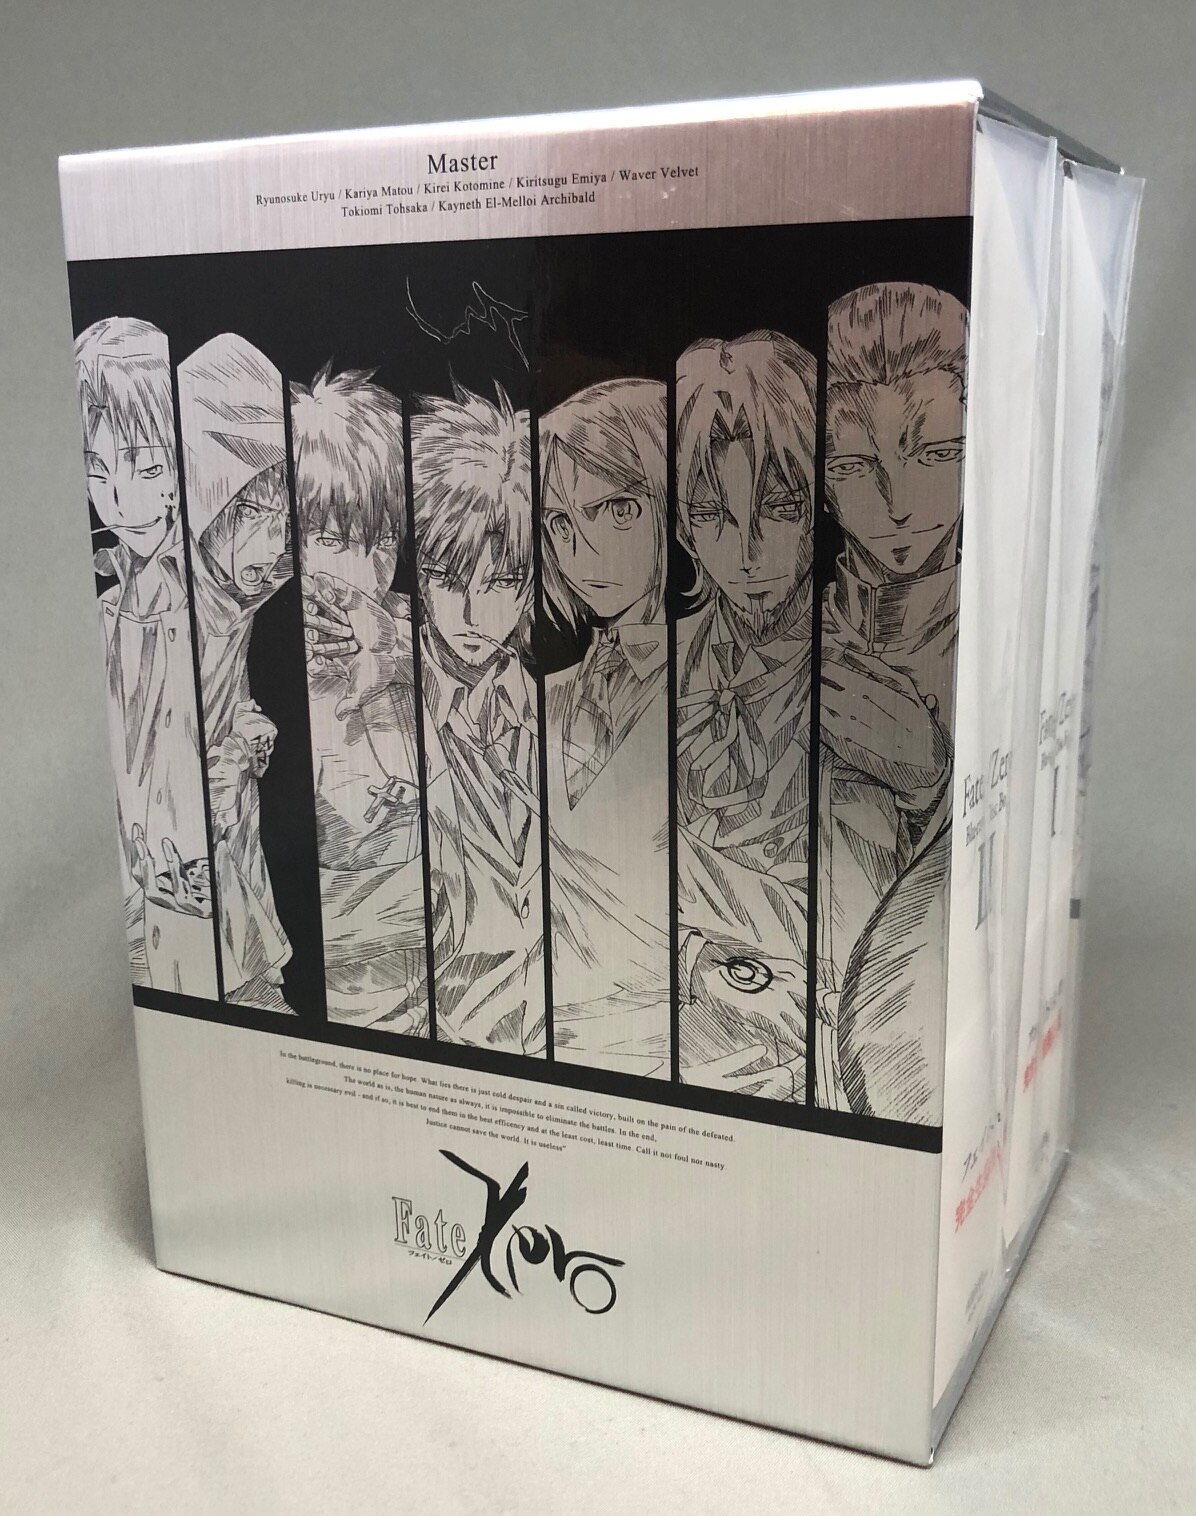 アニメBlu-ray 【アニメイト特典収納BOX付】Fate/Zero Blu-ray Disc